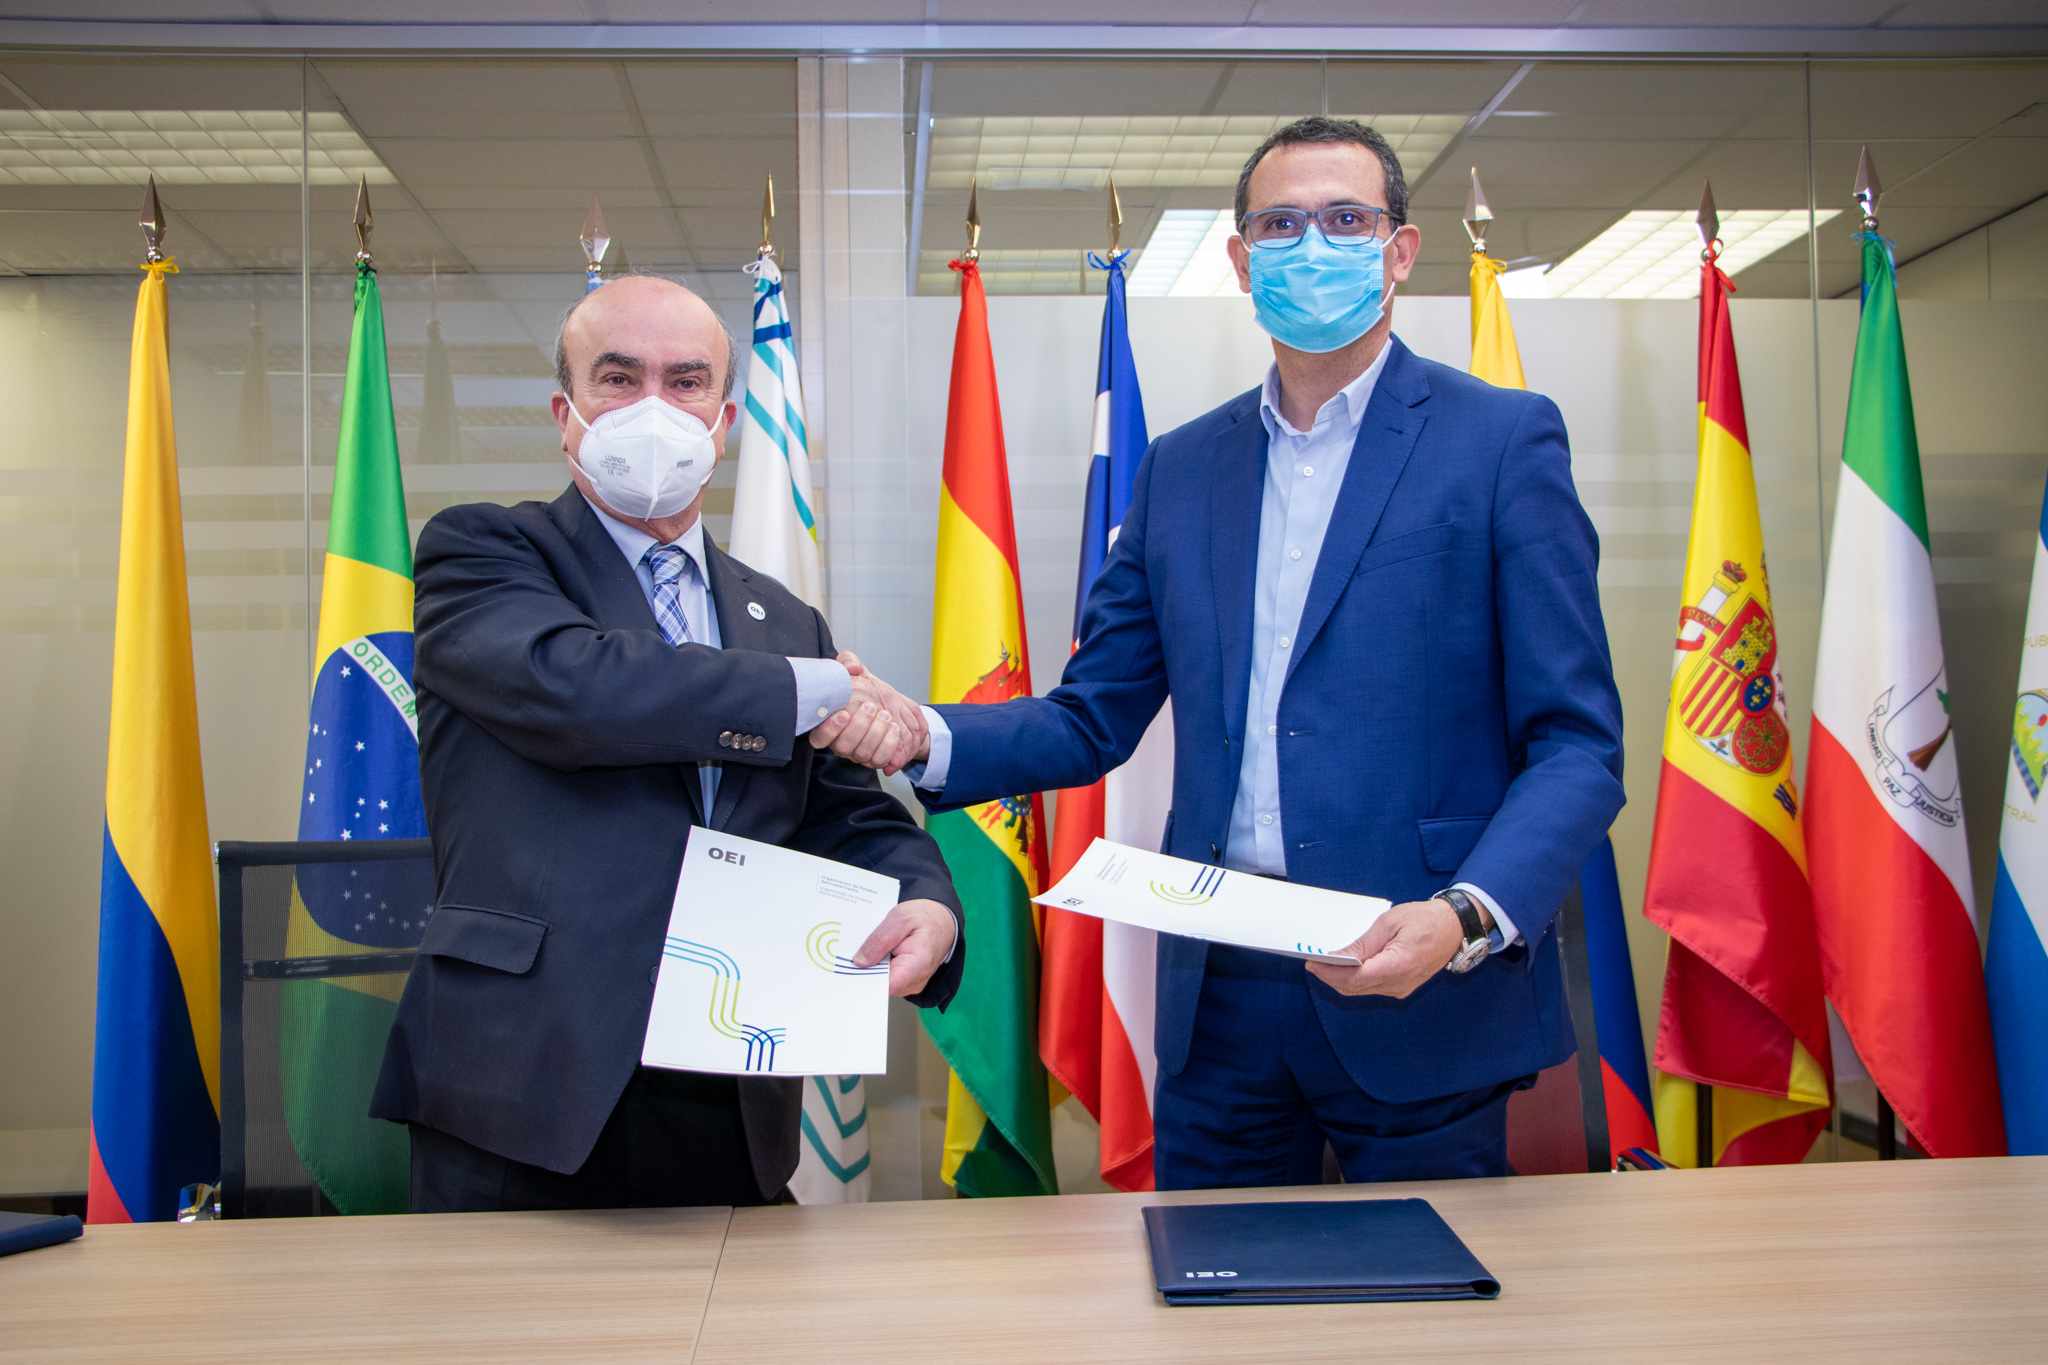 La OEI renueva su apoyo y vínculo en Madrid Platform, primer hub internacional de negocios entre Europa y América Latina